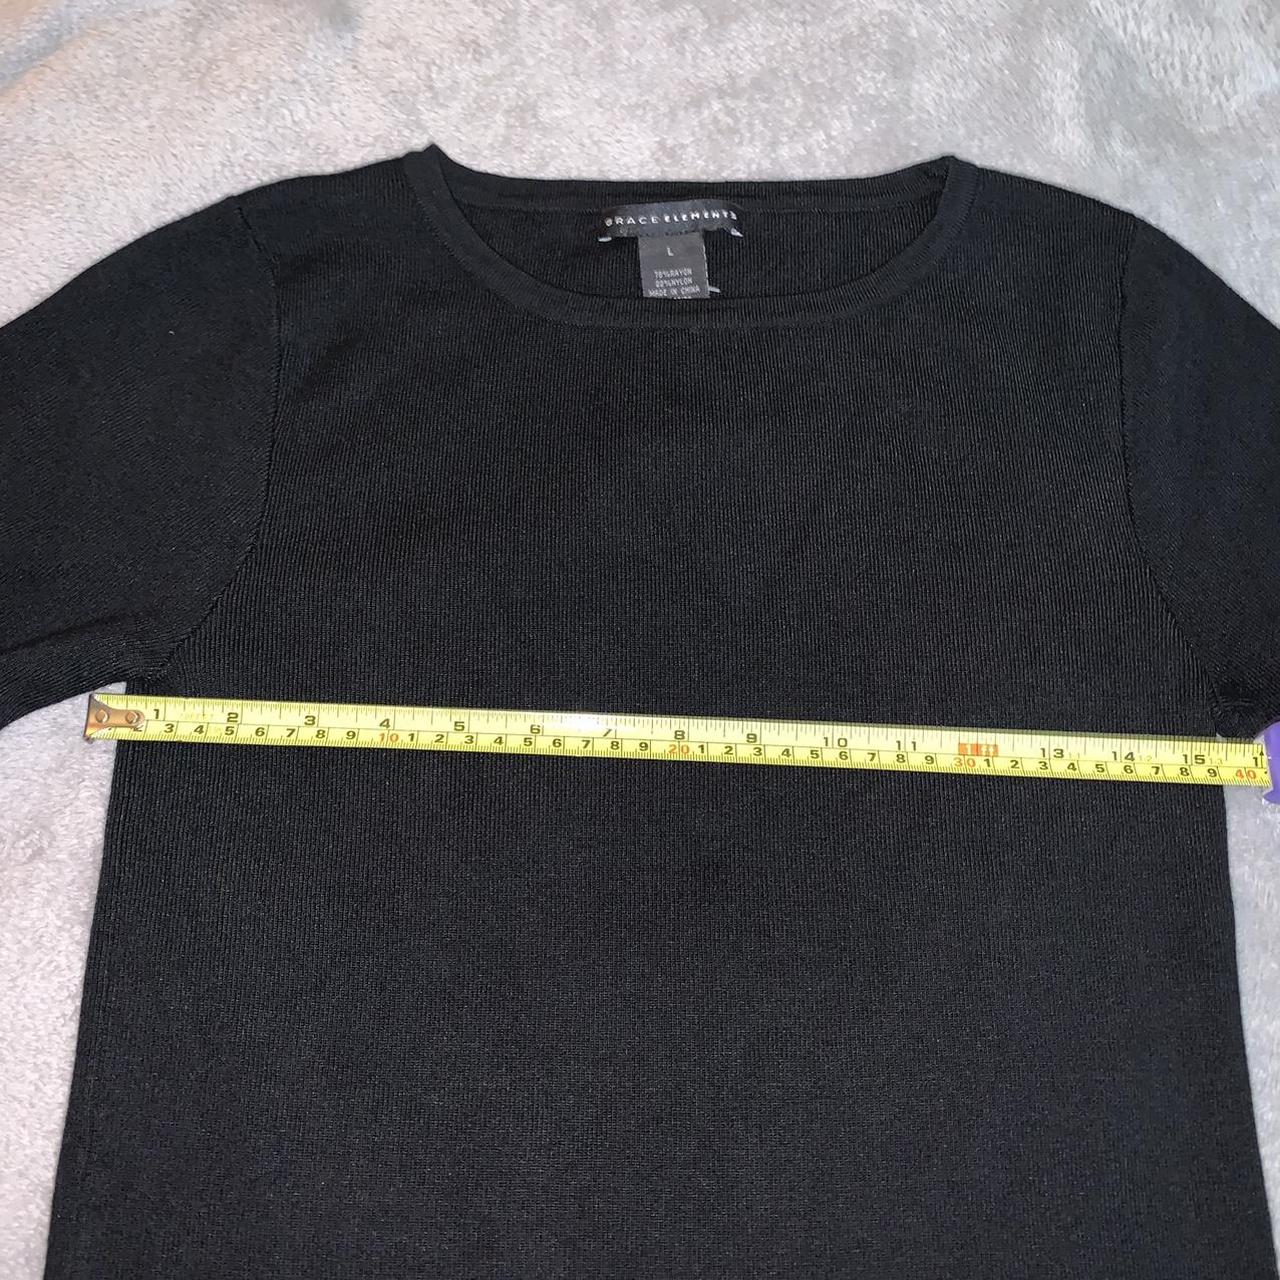 Product Image 3 - Basic Black Sweater size large